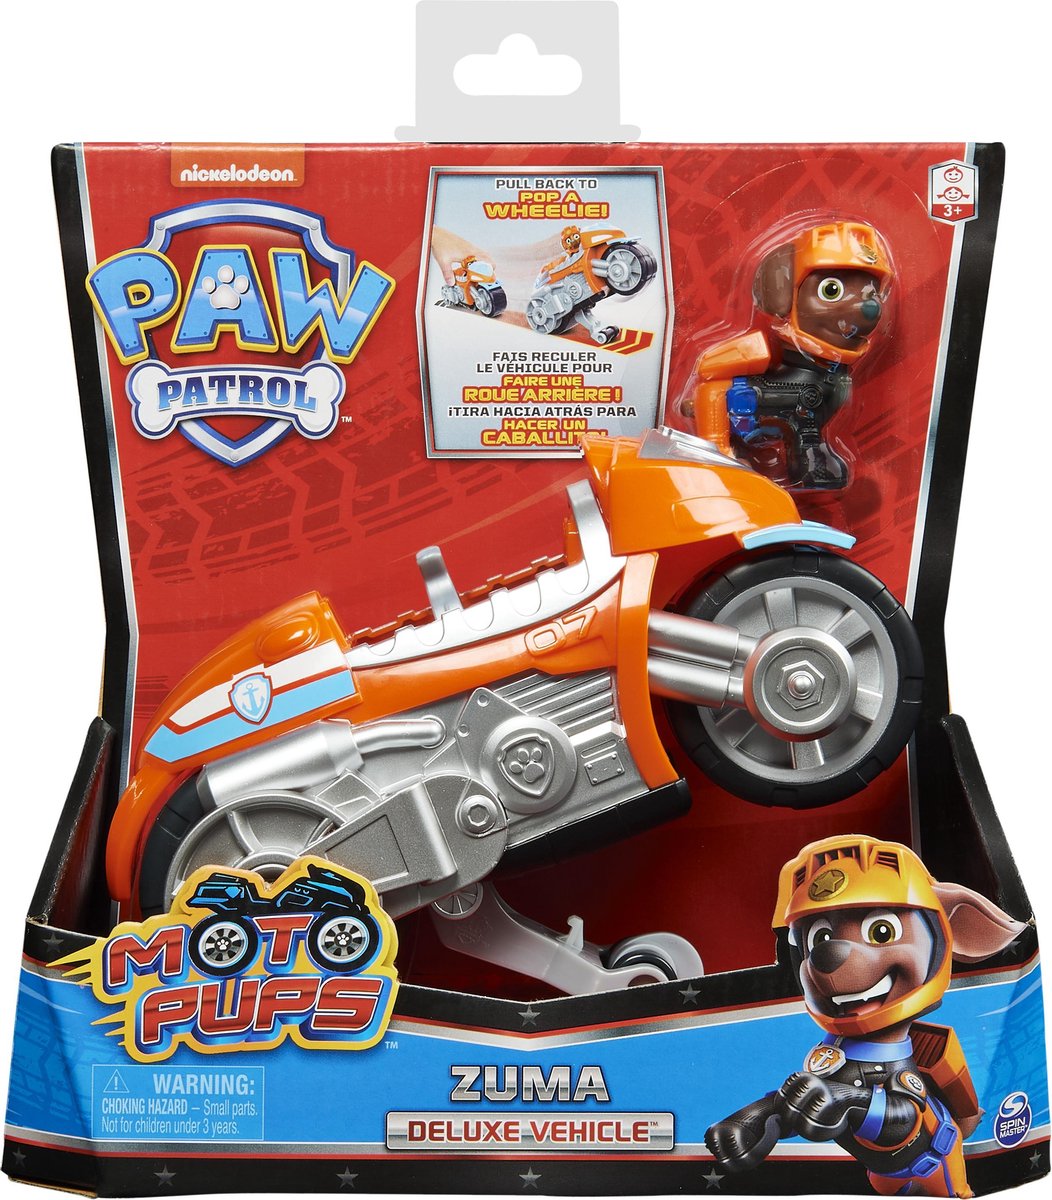 PAT PATROUILLE Zuma véhicule et Figurine Ultimate Rescue - Cdiscount Jeux -  Jouets